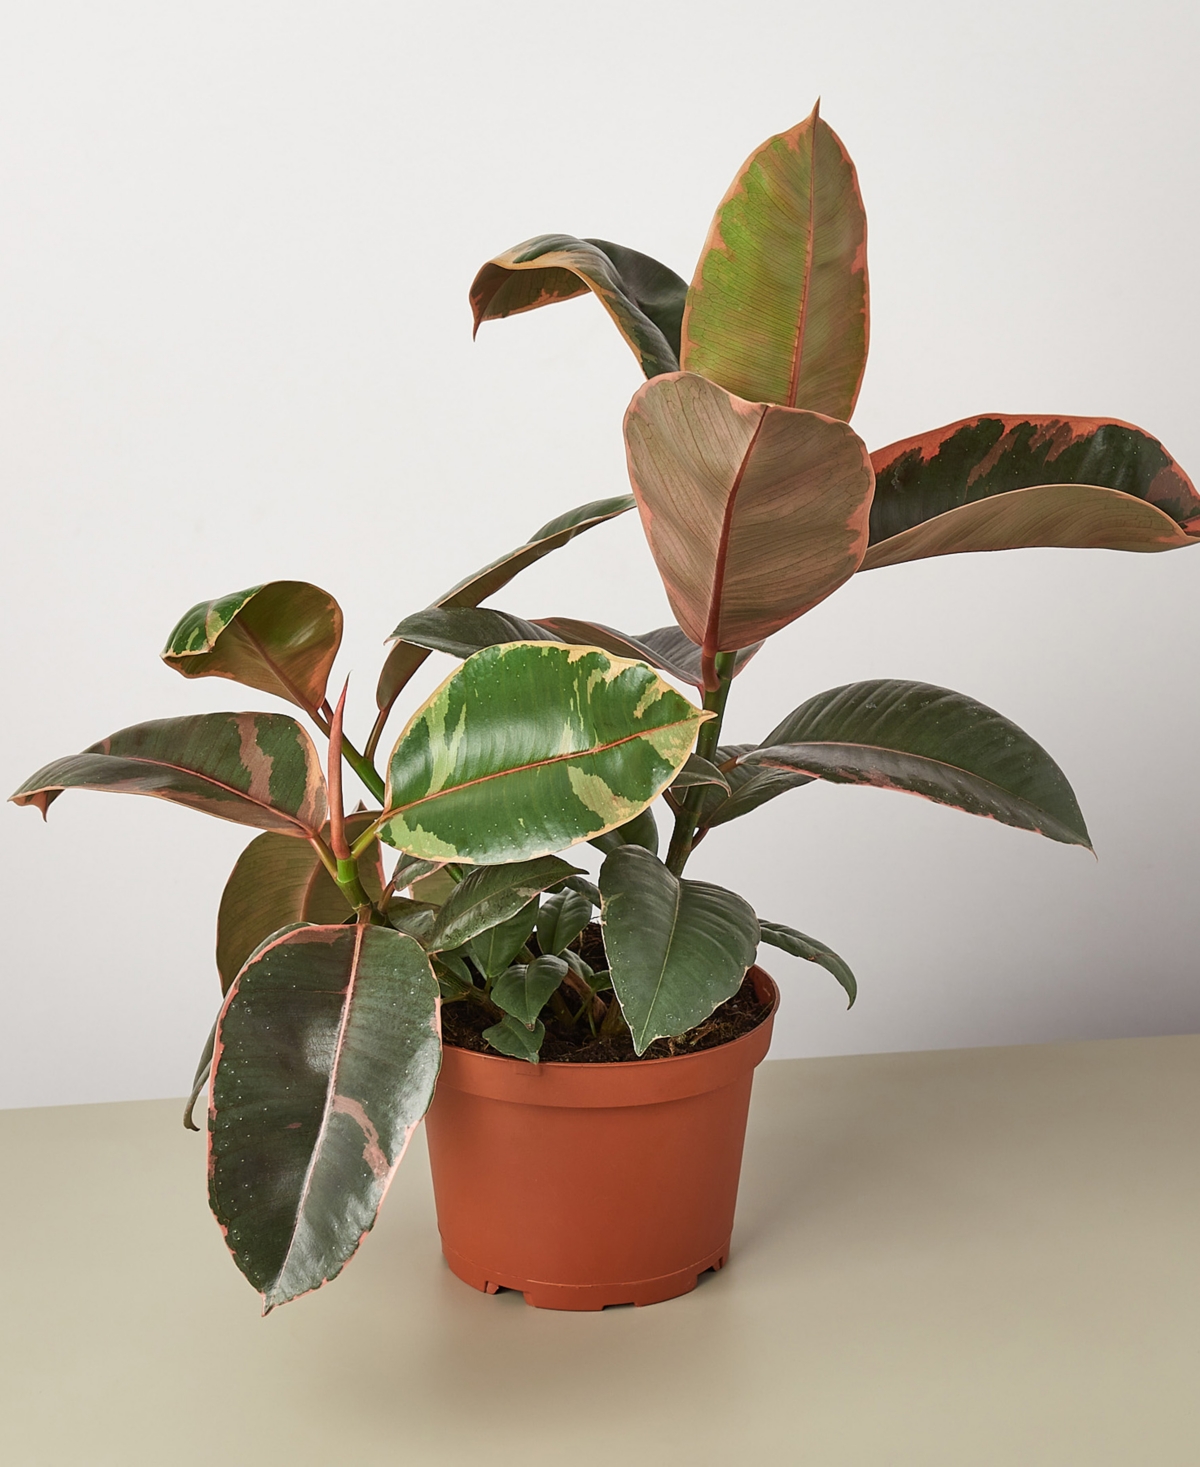 Ficus Ruby Pink 'Elastica' Live Plant, 6" Pot